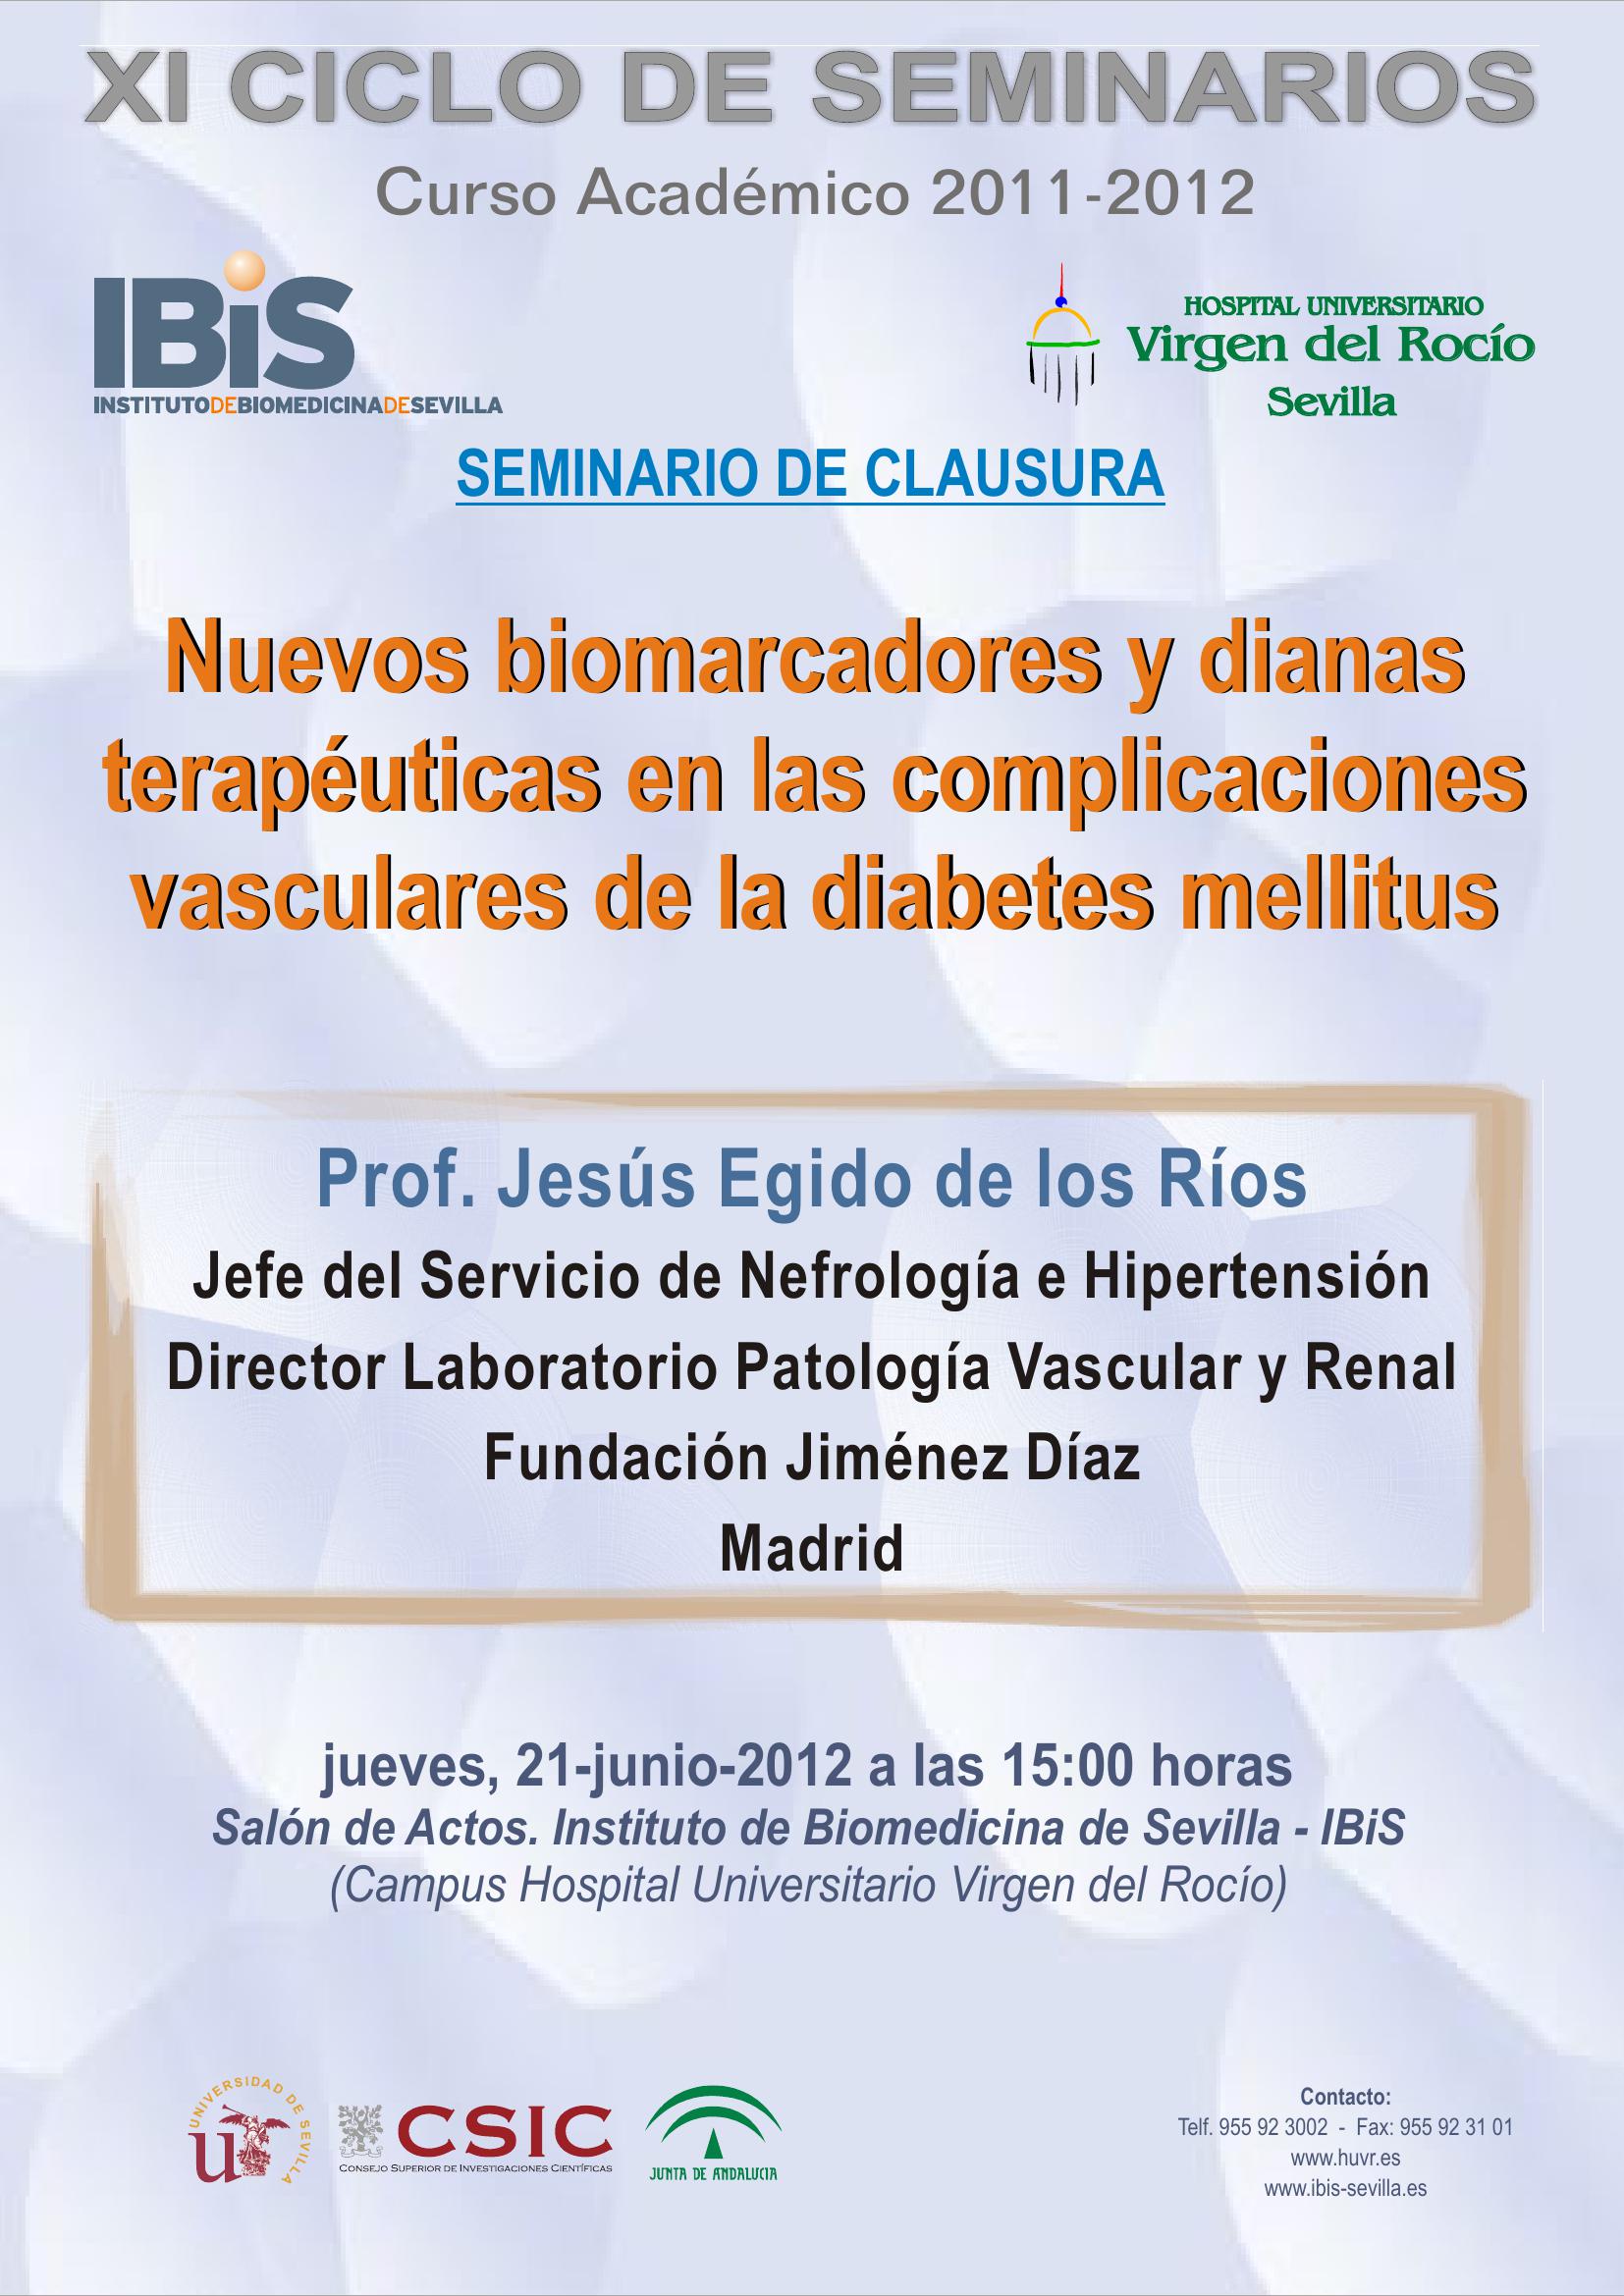 Poster: Nuevos biomarcadores y dianas terapéuticas en las complicaciones vasculares de la diabetes mellitus.